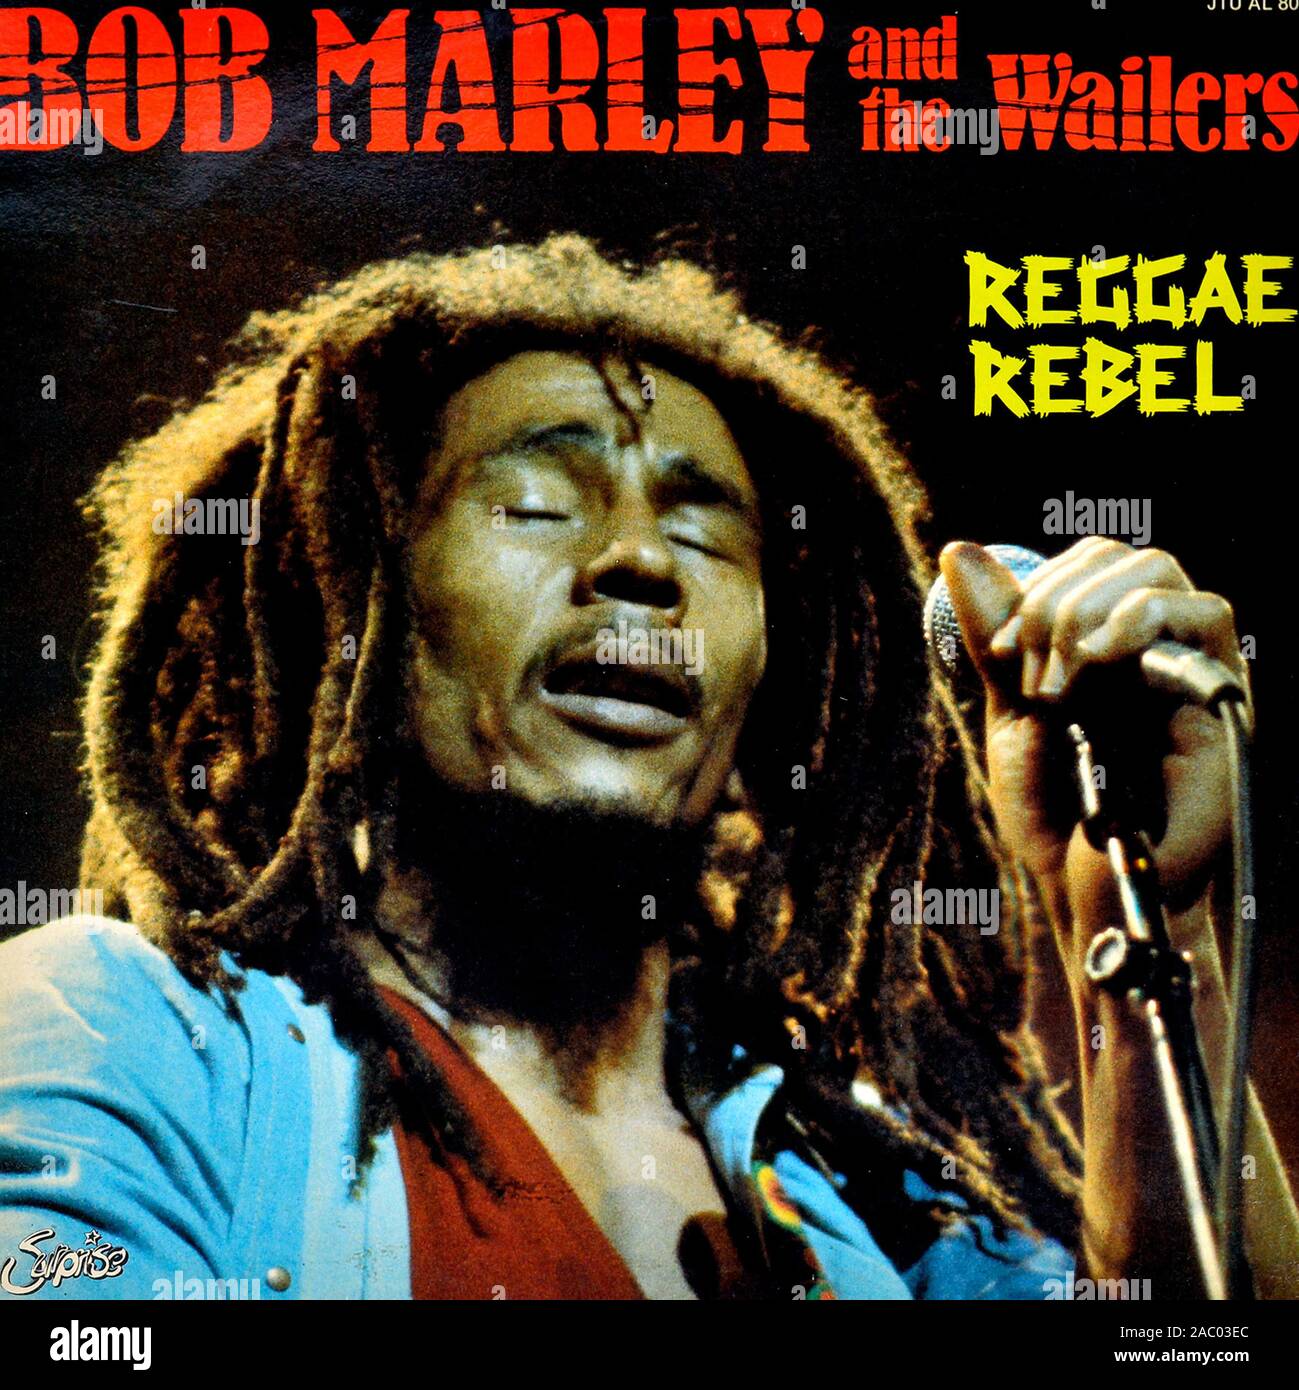 BOB Marley y The Wailers Reggae Rebel - vinilo Vintage portada del álbum  Fotografía de stock - Alamy